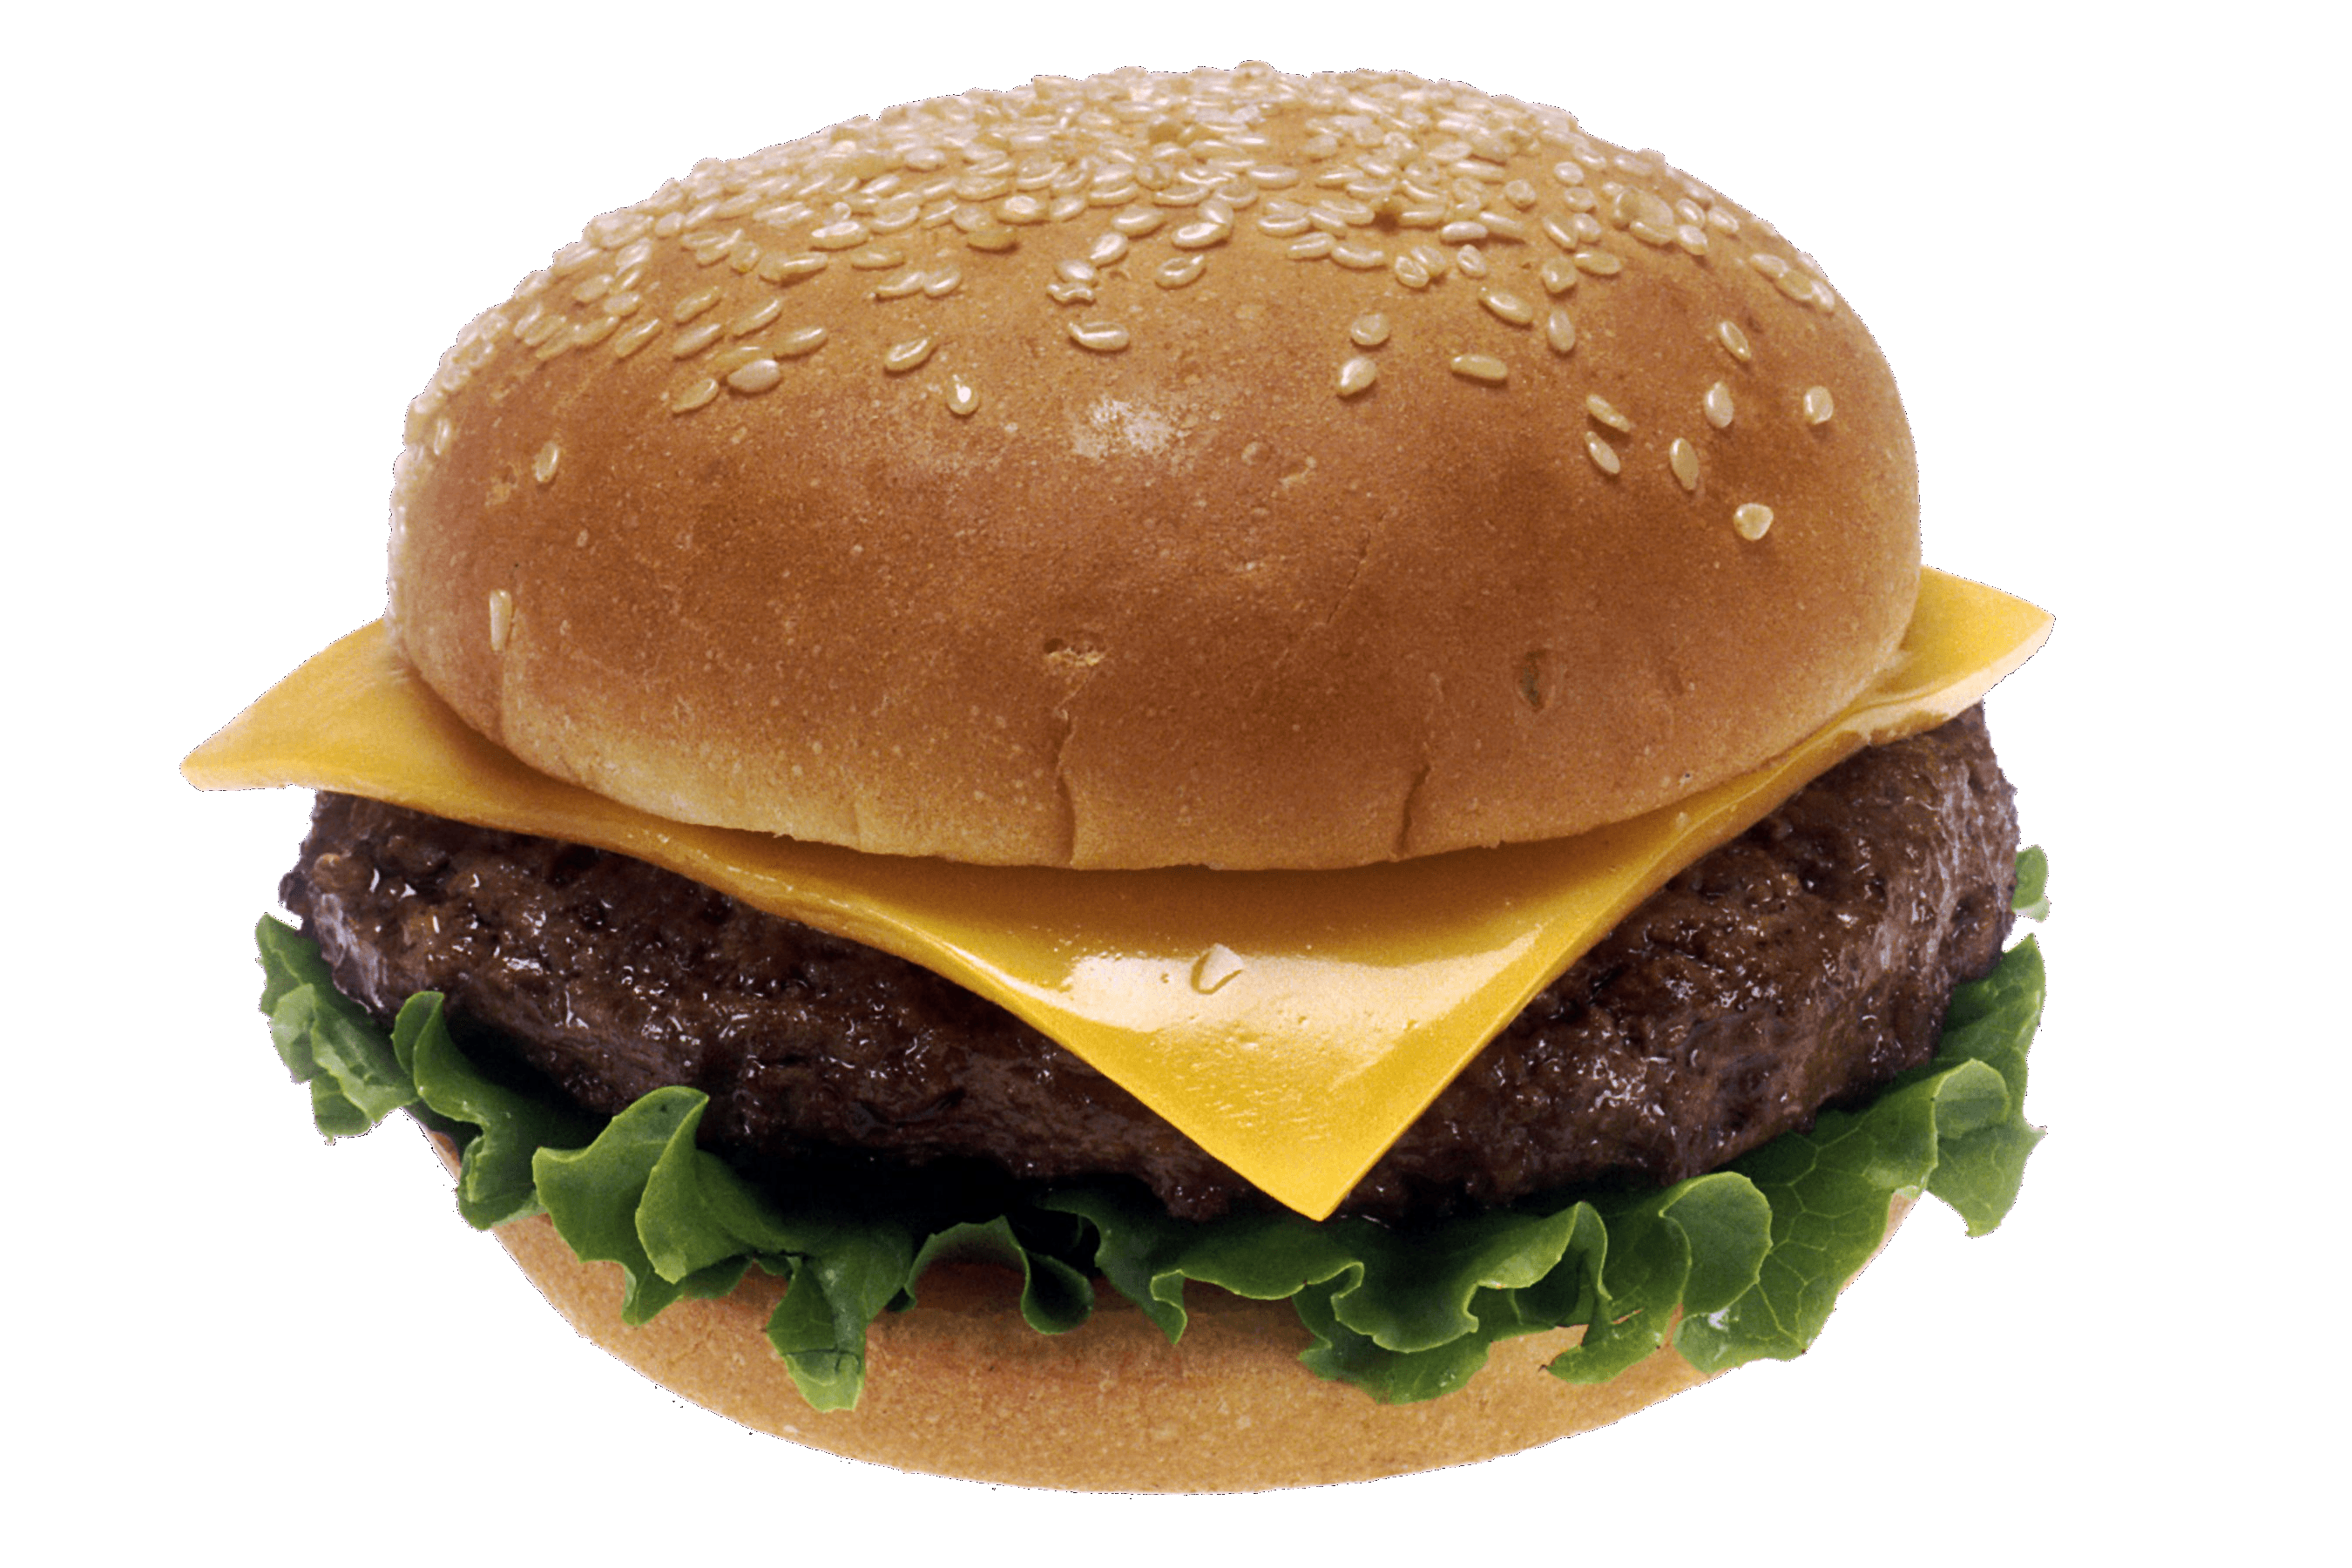 53-hamburger-burger-png-image.png